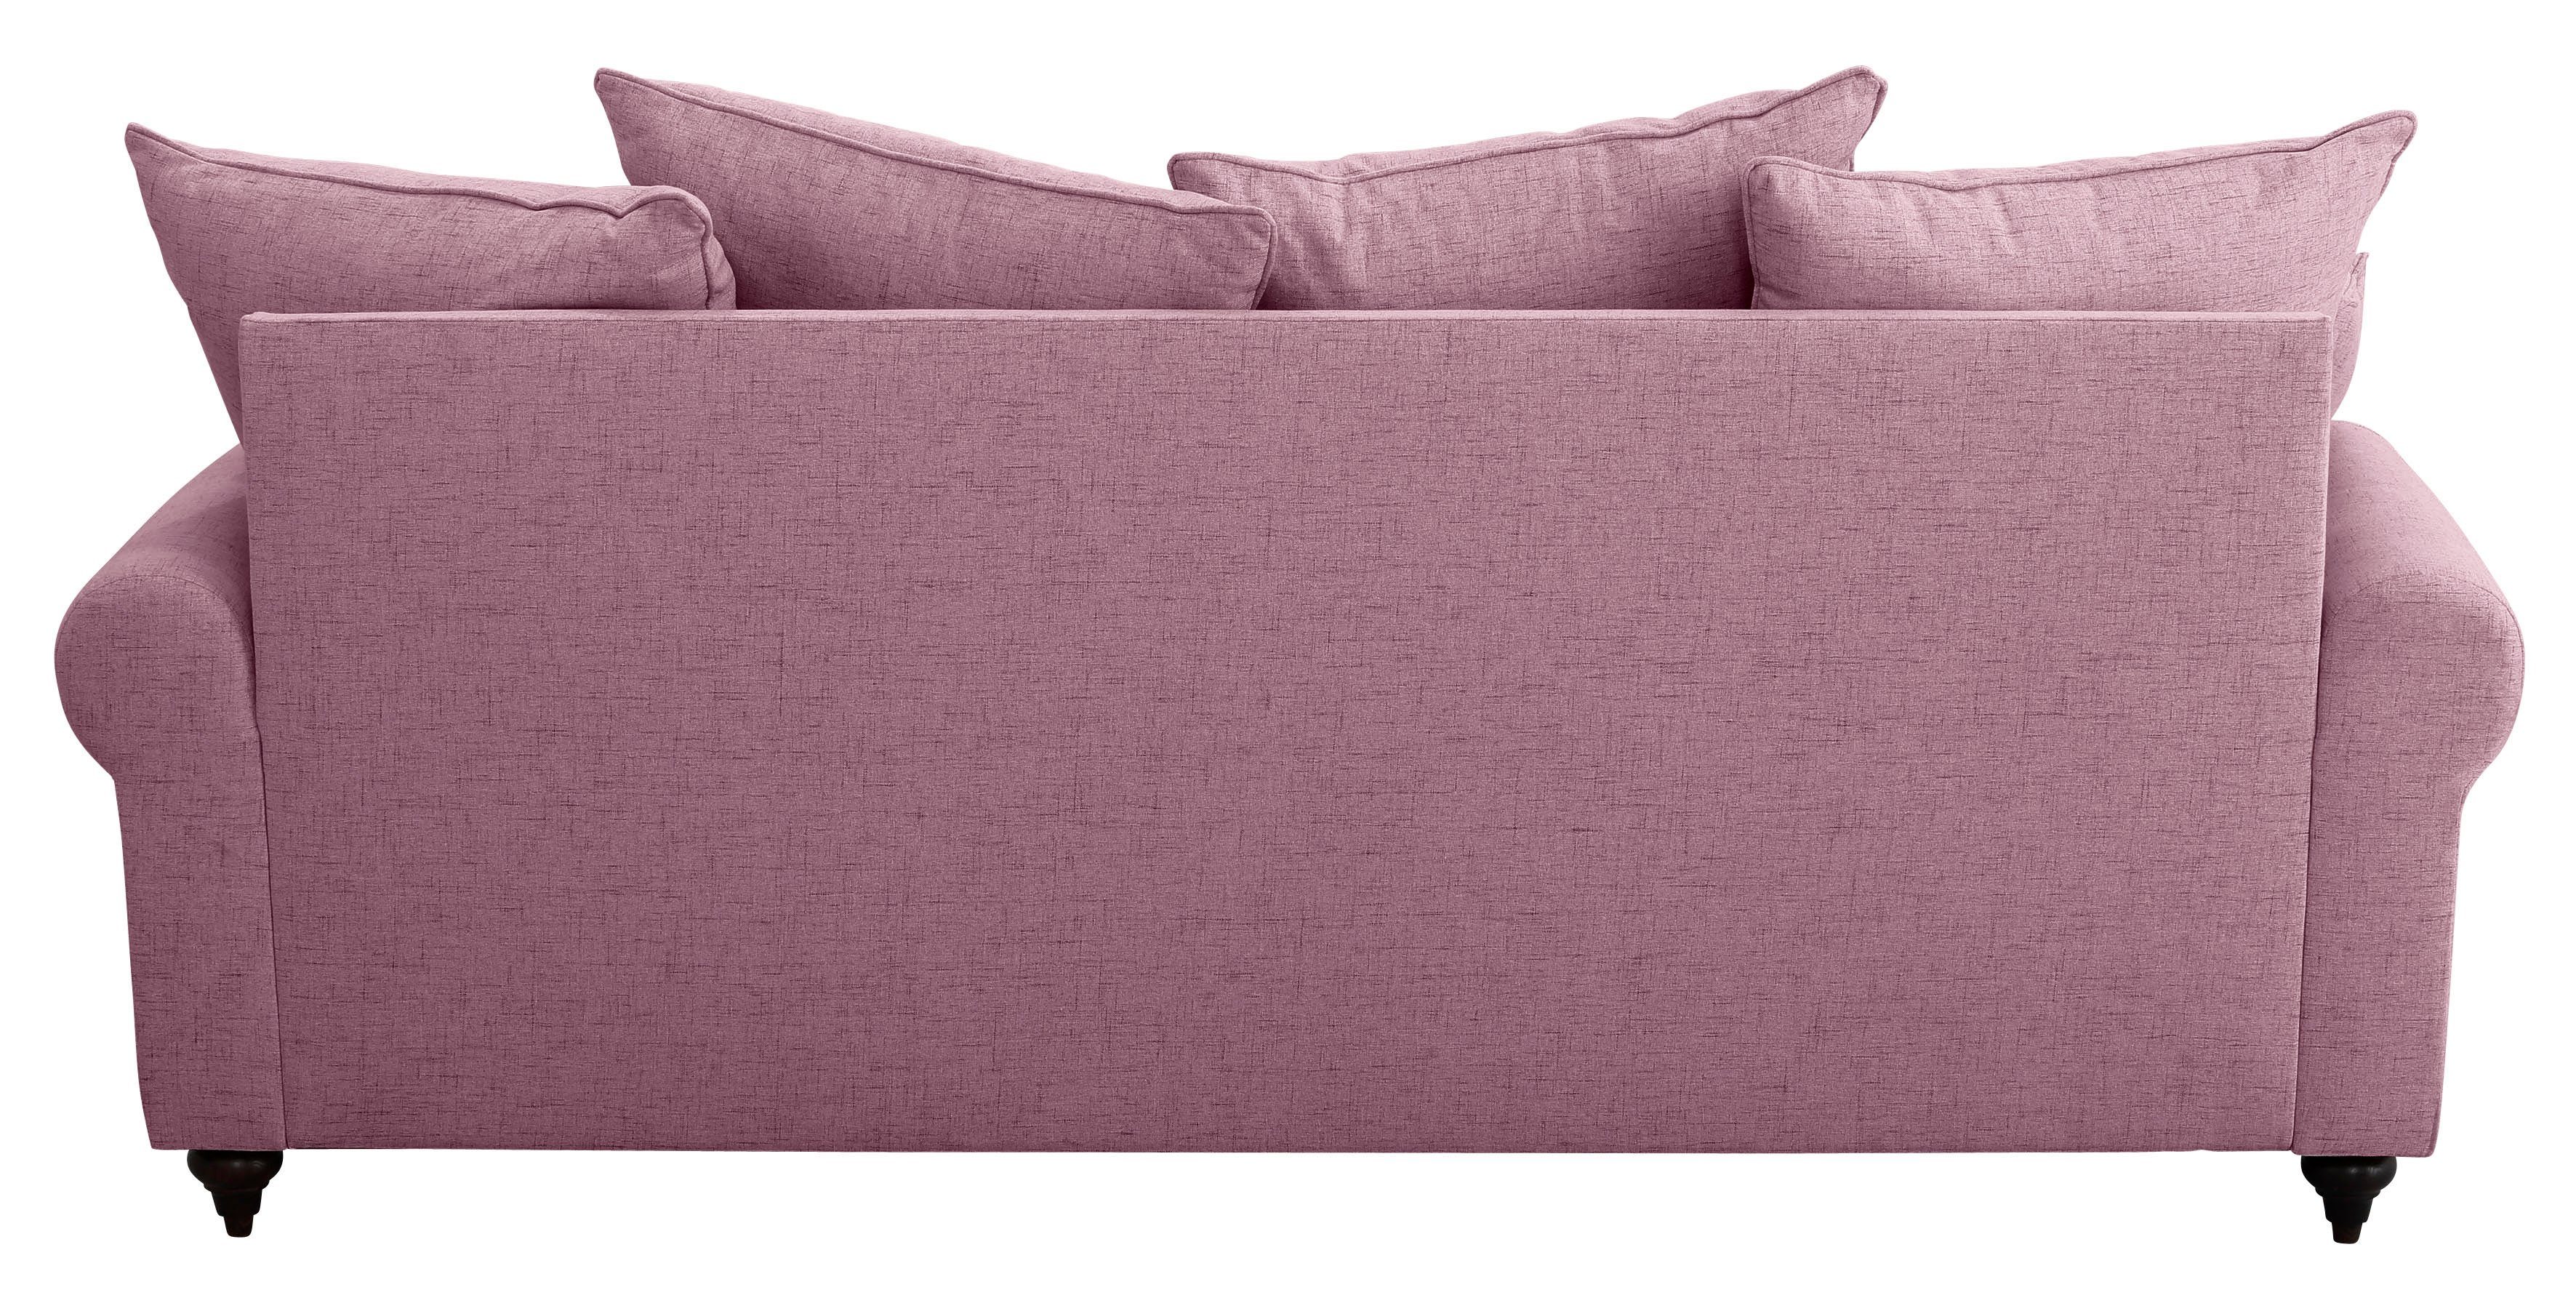 Bloomer, in Farben 3-Sitzer affaire erhältlich Kaltschaum, verschiedenen violet mit hochwertigem Home